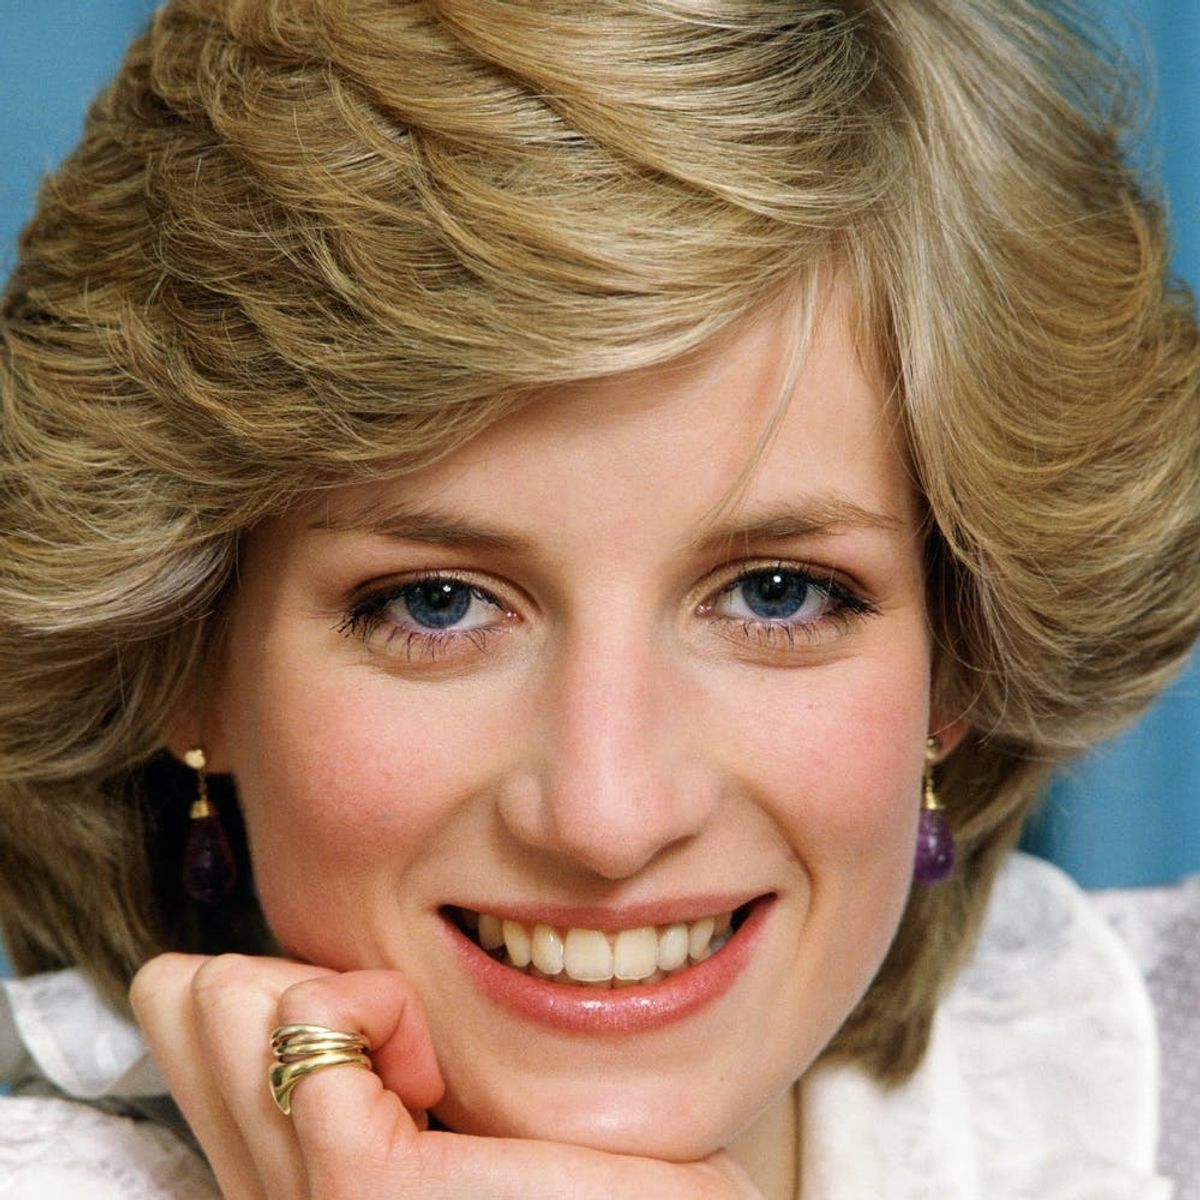 How “Vogue” Inspired Princess Diana’s Signature Short ‘Do